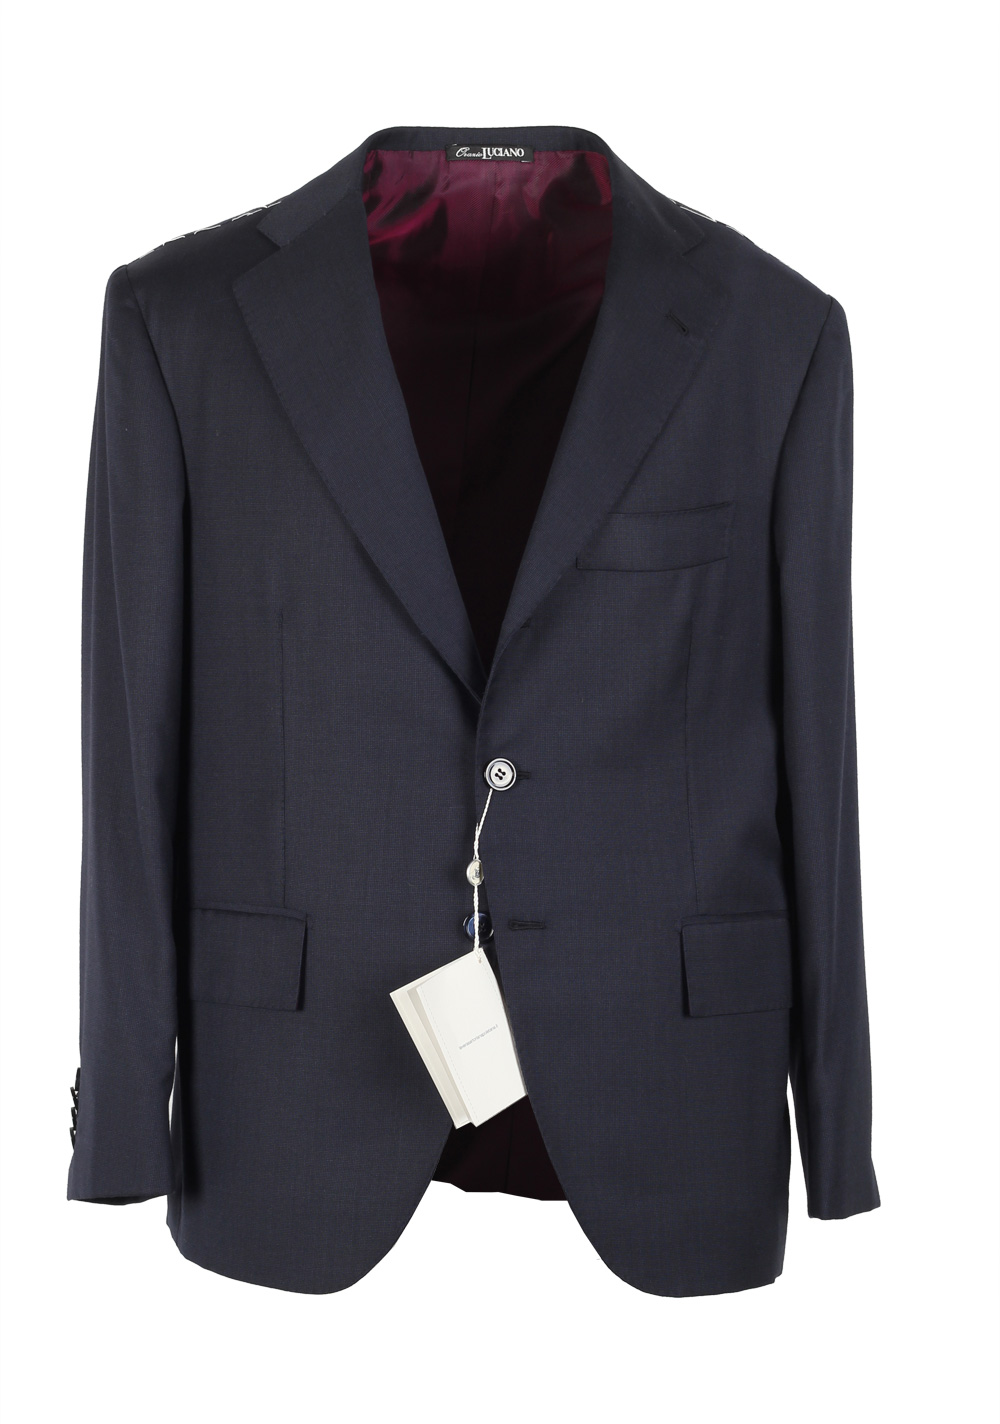 Orazio Luciano La Vera Sartoria Napoletana Suit Size 50S / 40S U.S. | Costume Limité